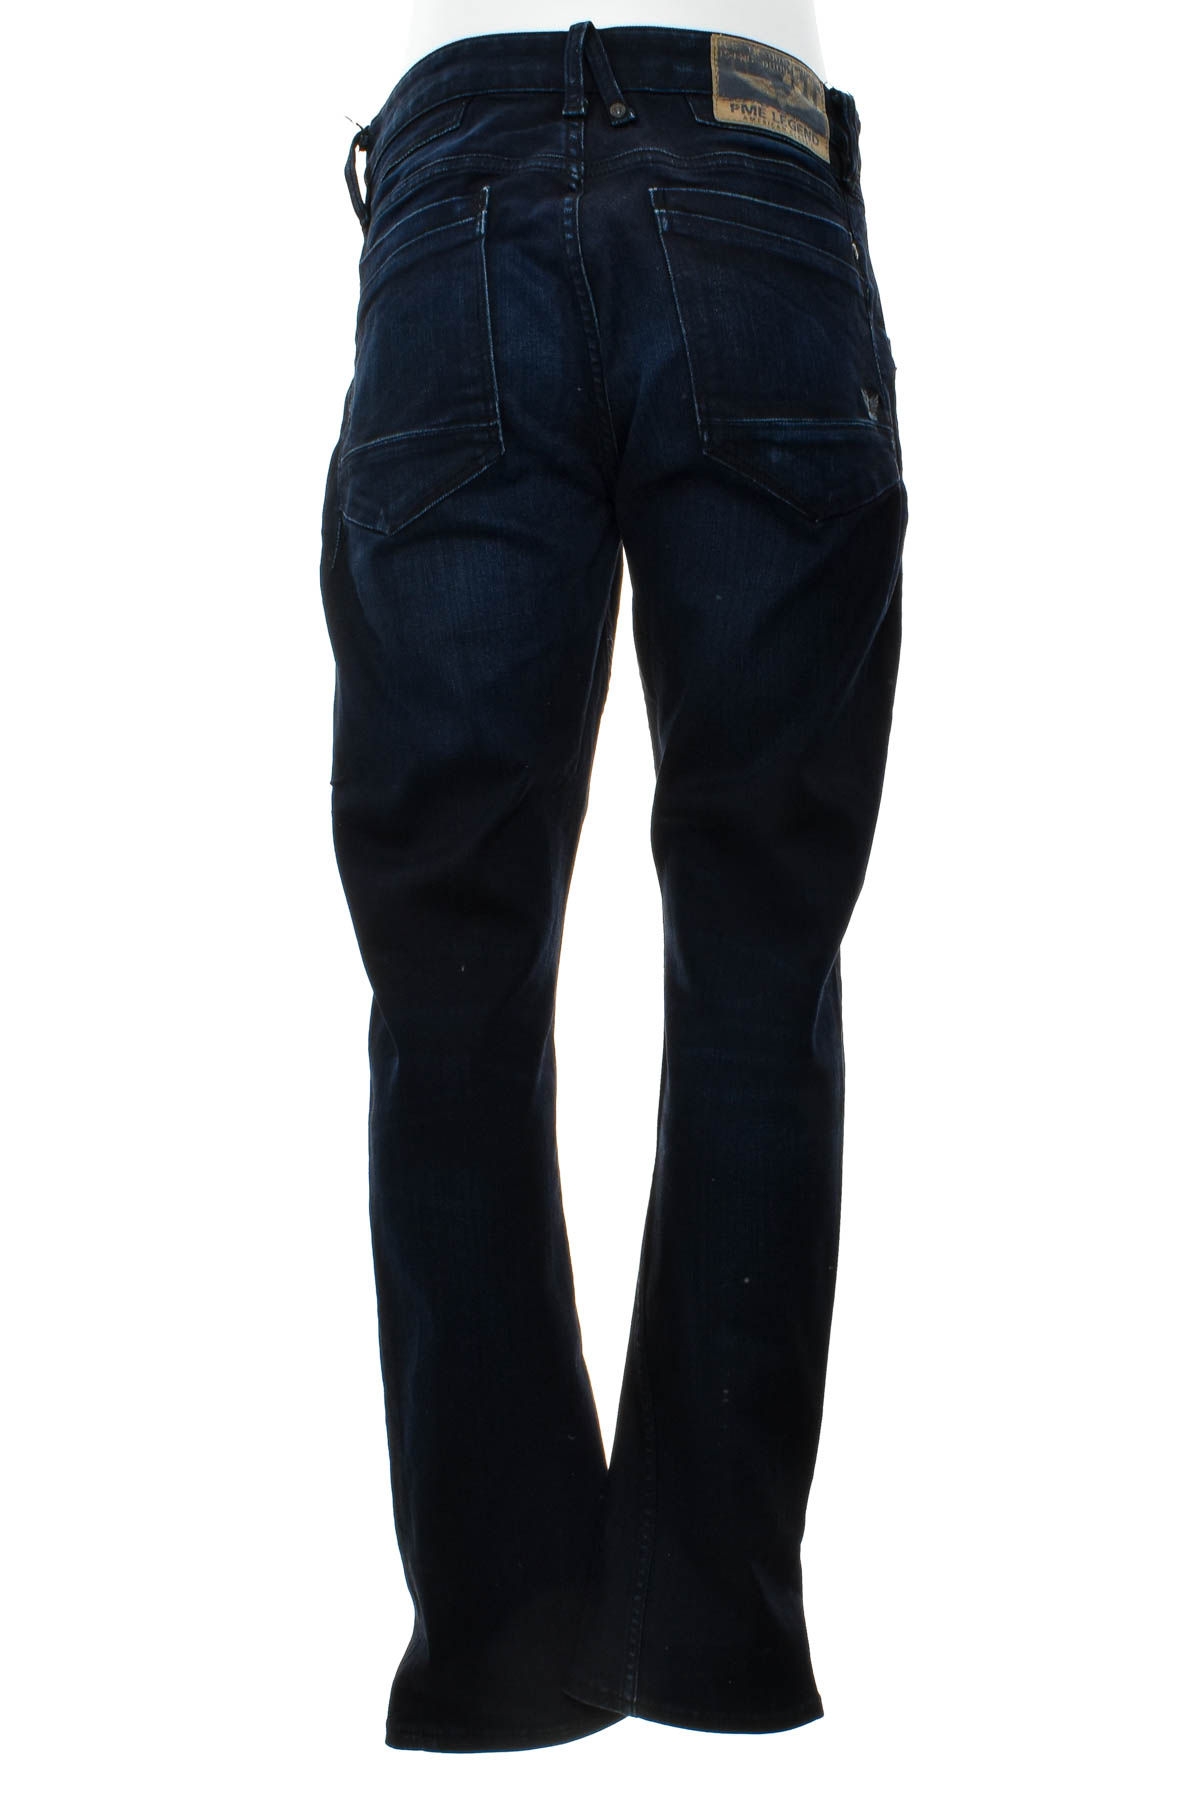 Men's jeans - PME Legend - 1